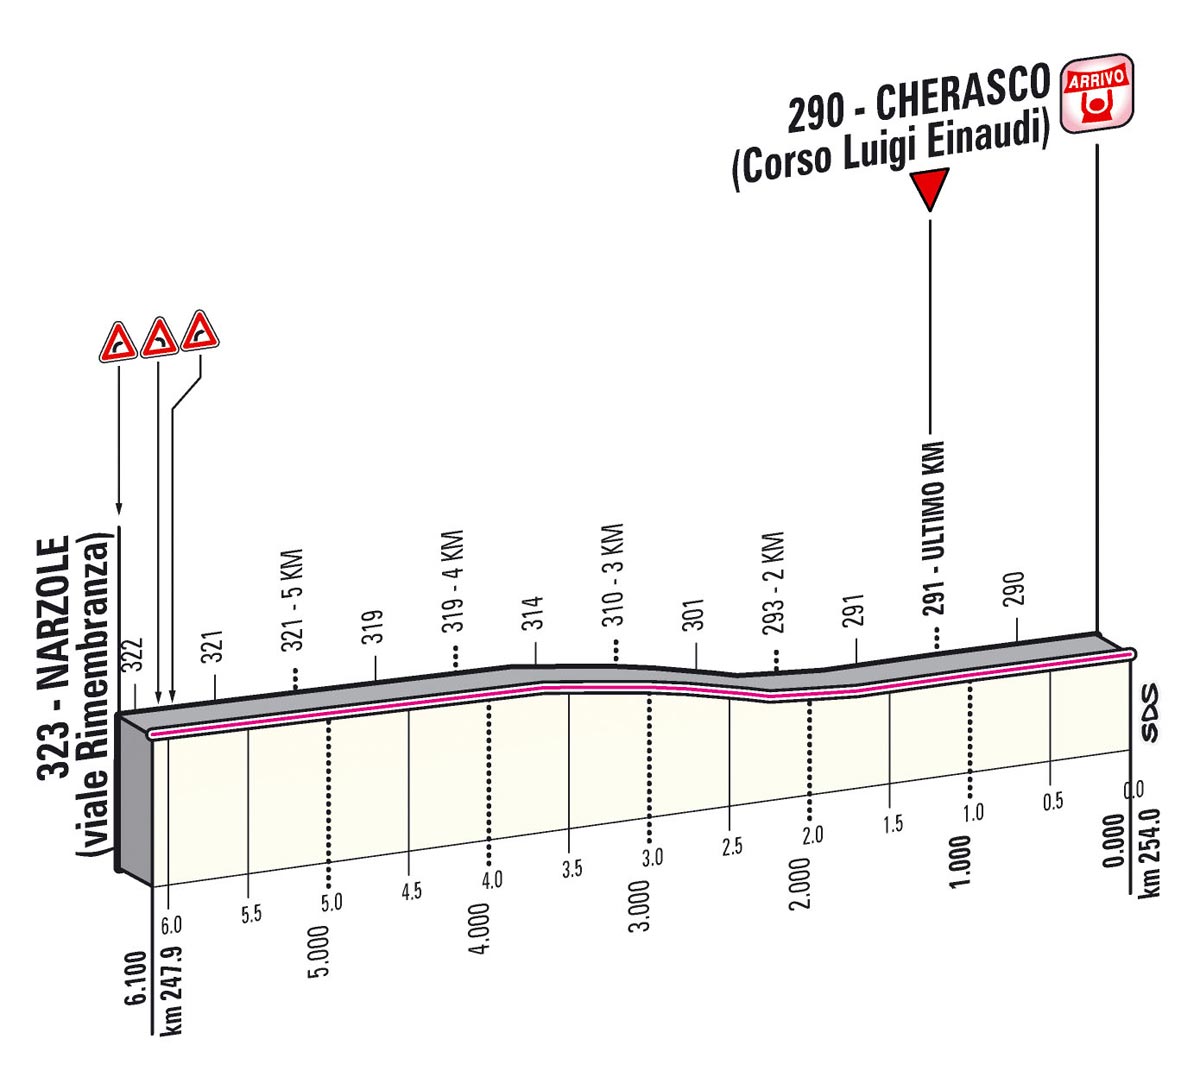 Giro d'Italia 2013 Stage 13 last kms